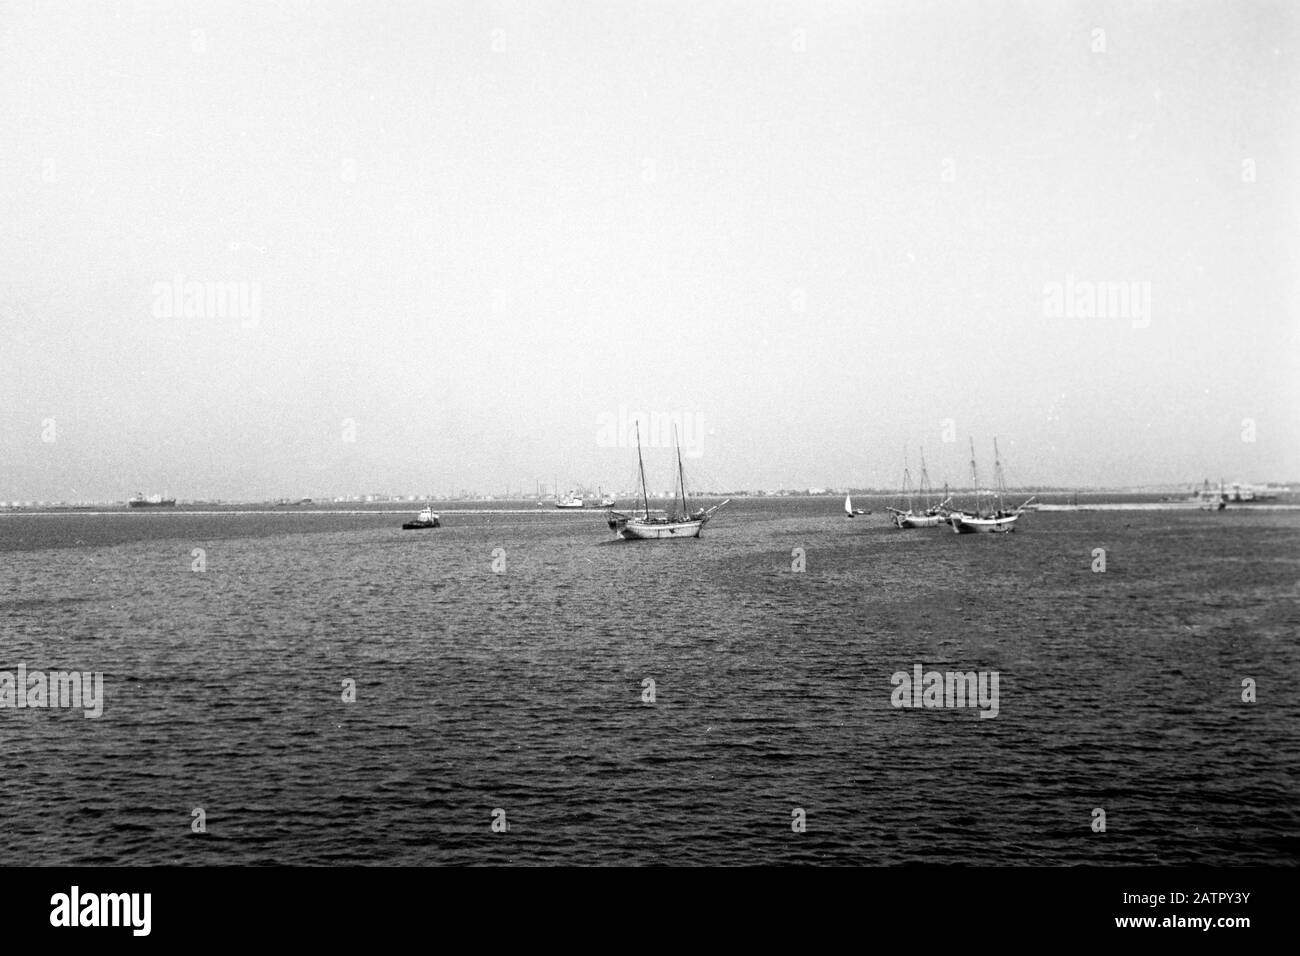 Unterwegs auf dem Suezkanal, Ägypten 1955. Travelling the Suez Canal by ship, Egypt 1955. Stock Photo